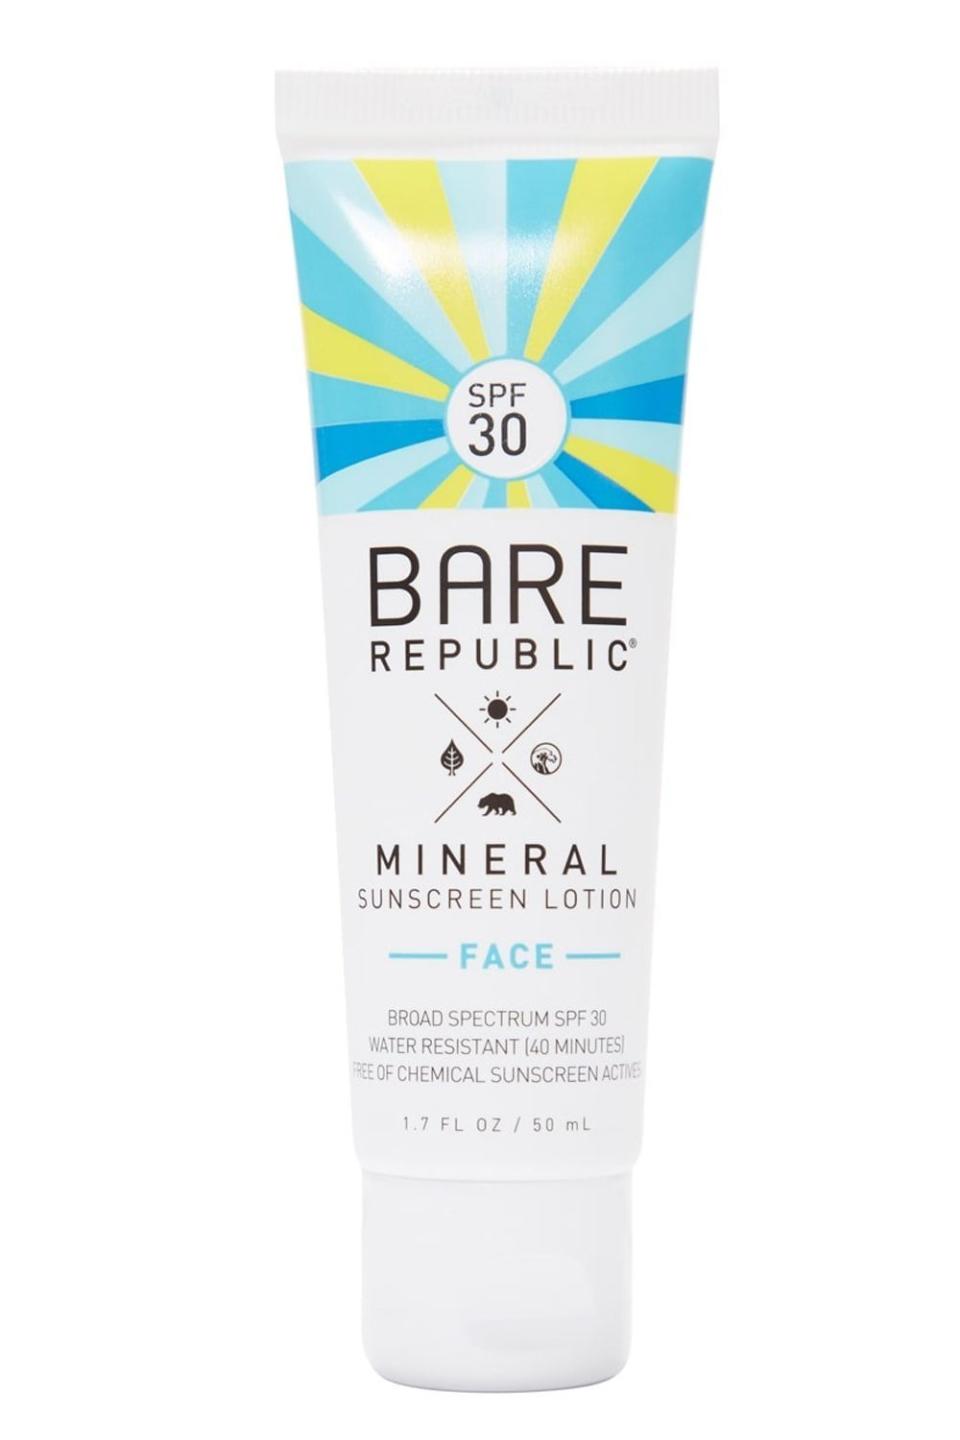 9) Bare Republic Mineral Face Sunscreen Lotion SPF 30